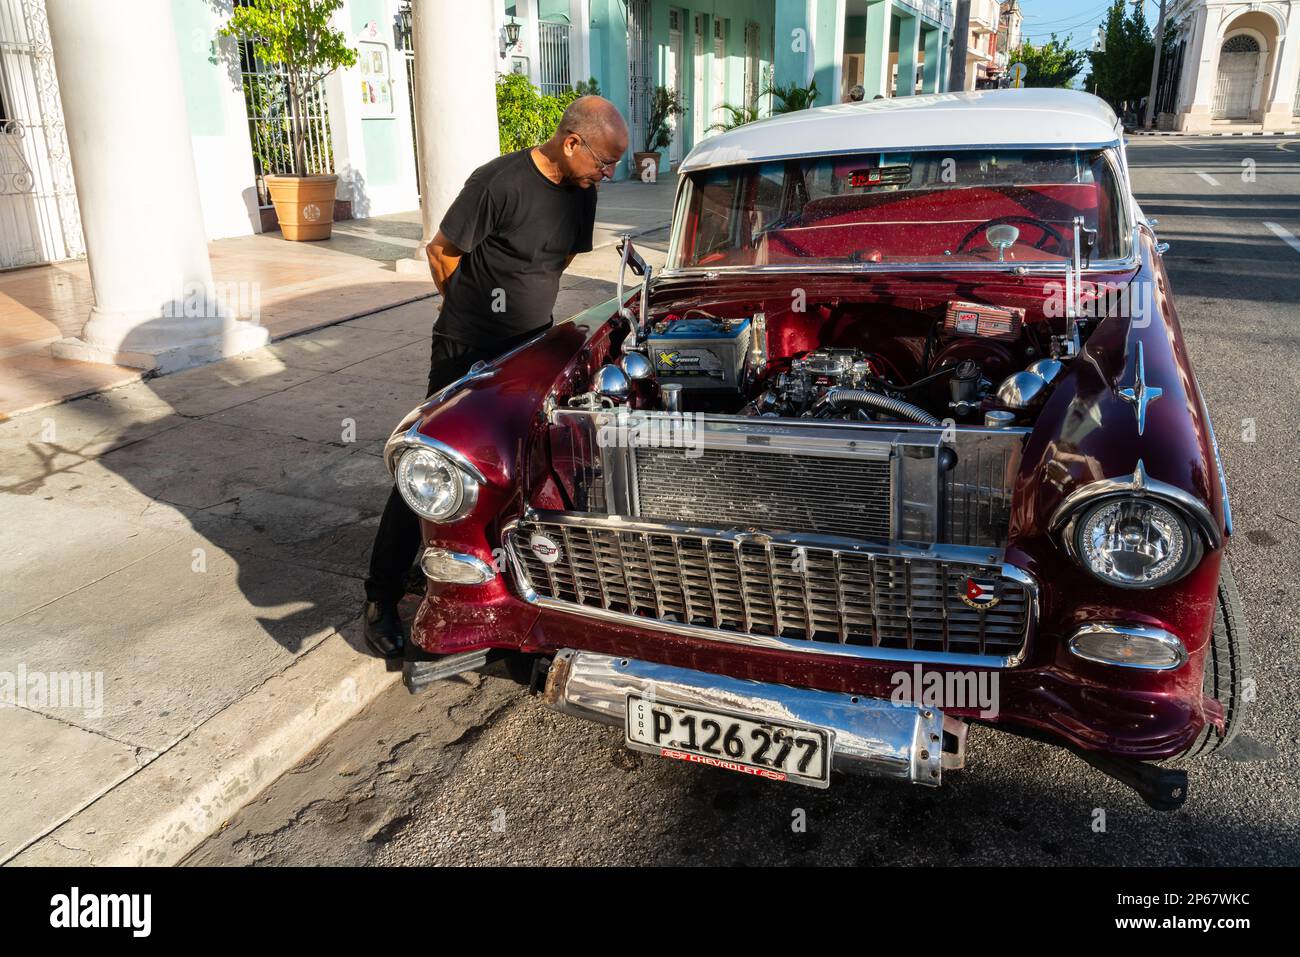 Ein kubanischer Mann inspiziert und bewundert den offenen Motor eines roten klassischen Chevrolet-Autos, Cienfuegos, Kuba, Westindischen, Karibik, Mittelamerika Stockfoto